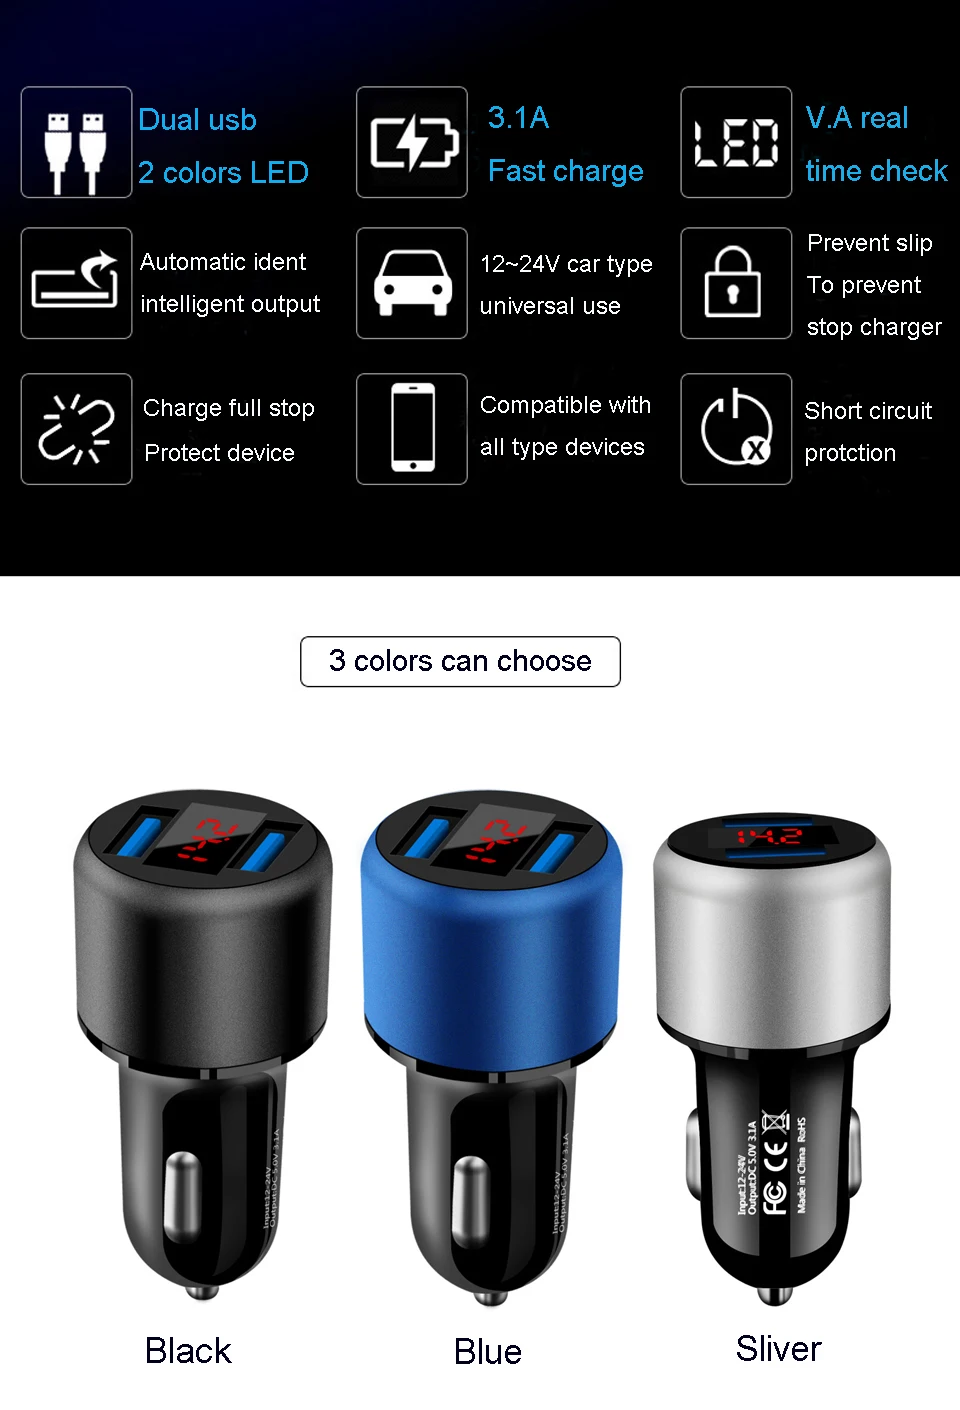 15 Вт двойное USB Автомобильное зарядное устройство 3.1A 5 в светодиодный дисплей Быстрая зарядка Смарт автомобильное зарядное устройство адаптер для samsung Xiaomi Мобильный телефон планшет